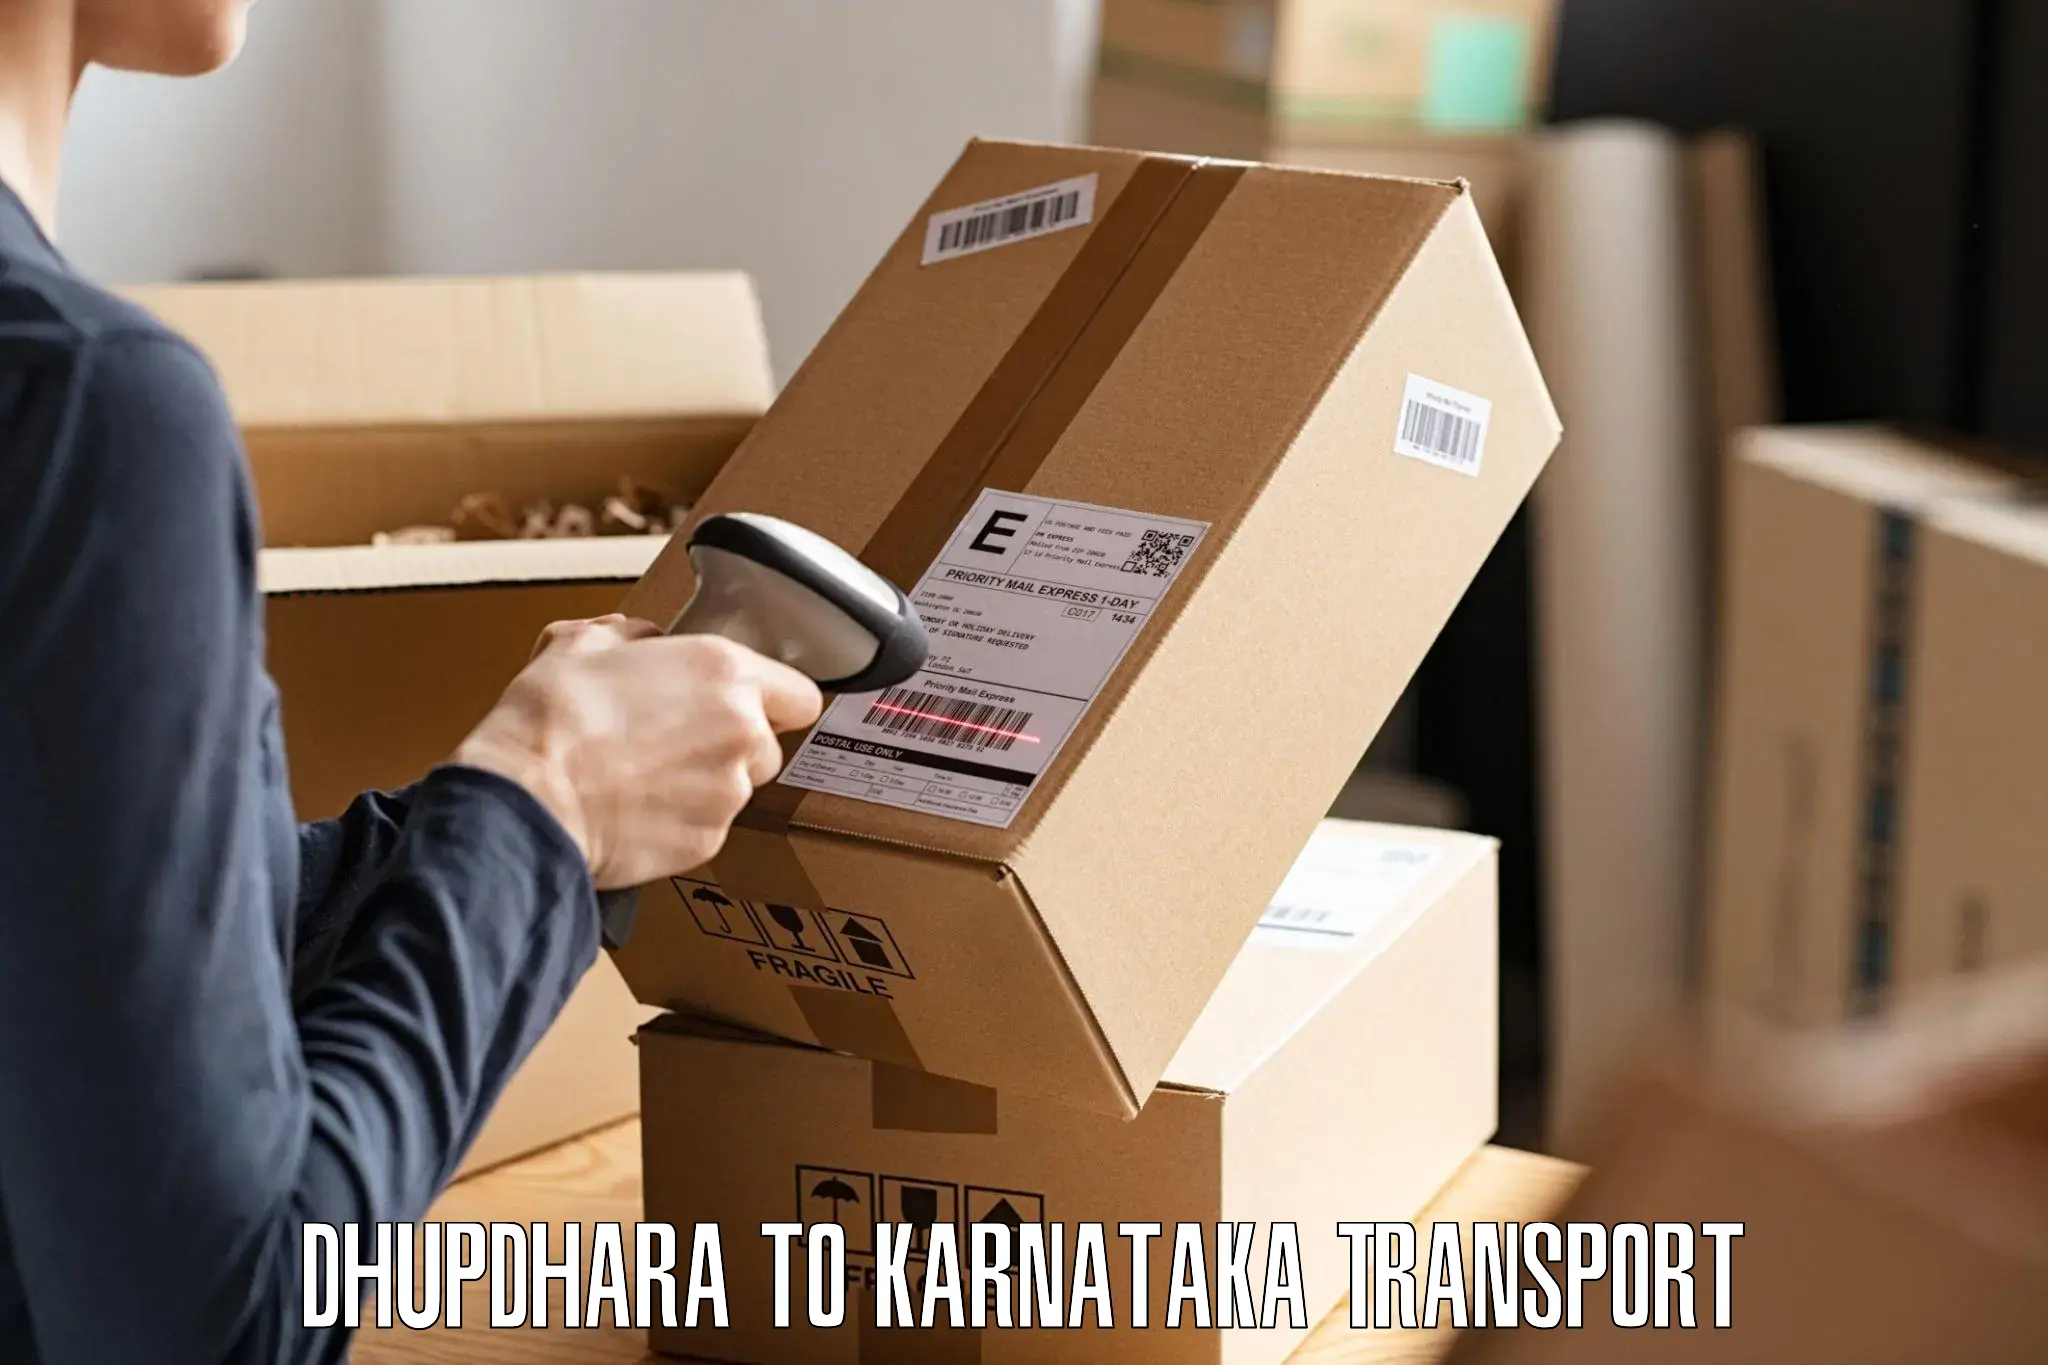 Road transport online services Dhupdhara to Basavana Bagewadi